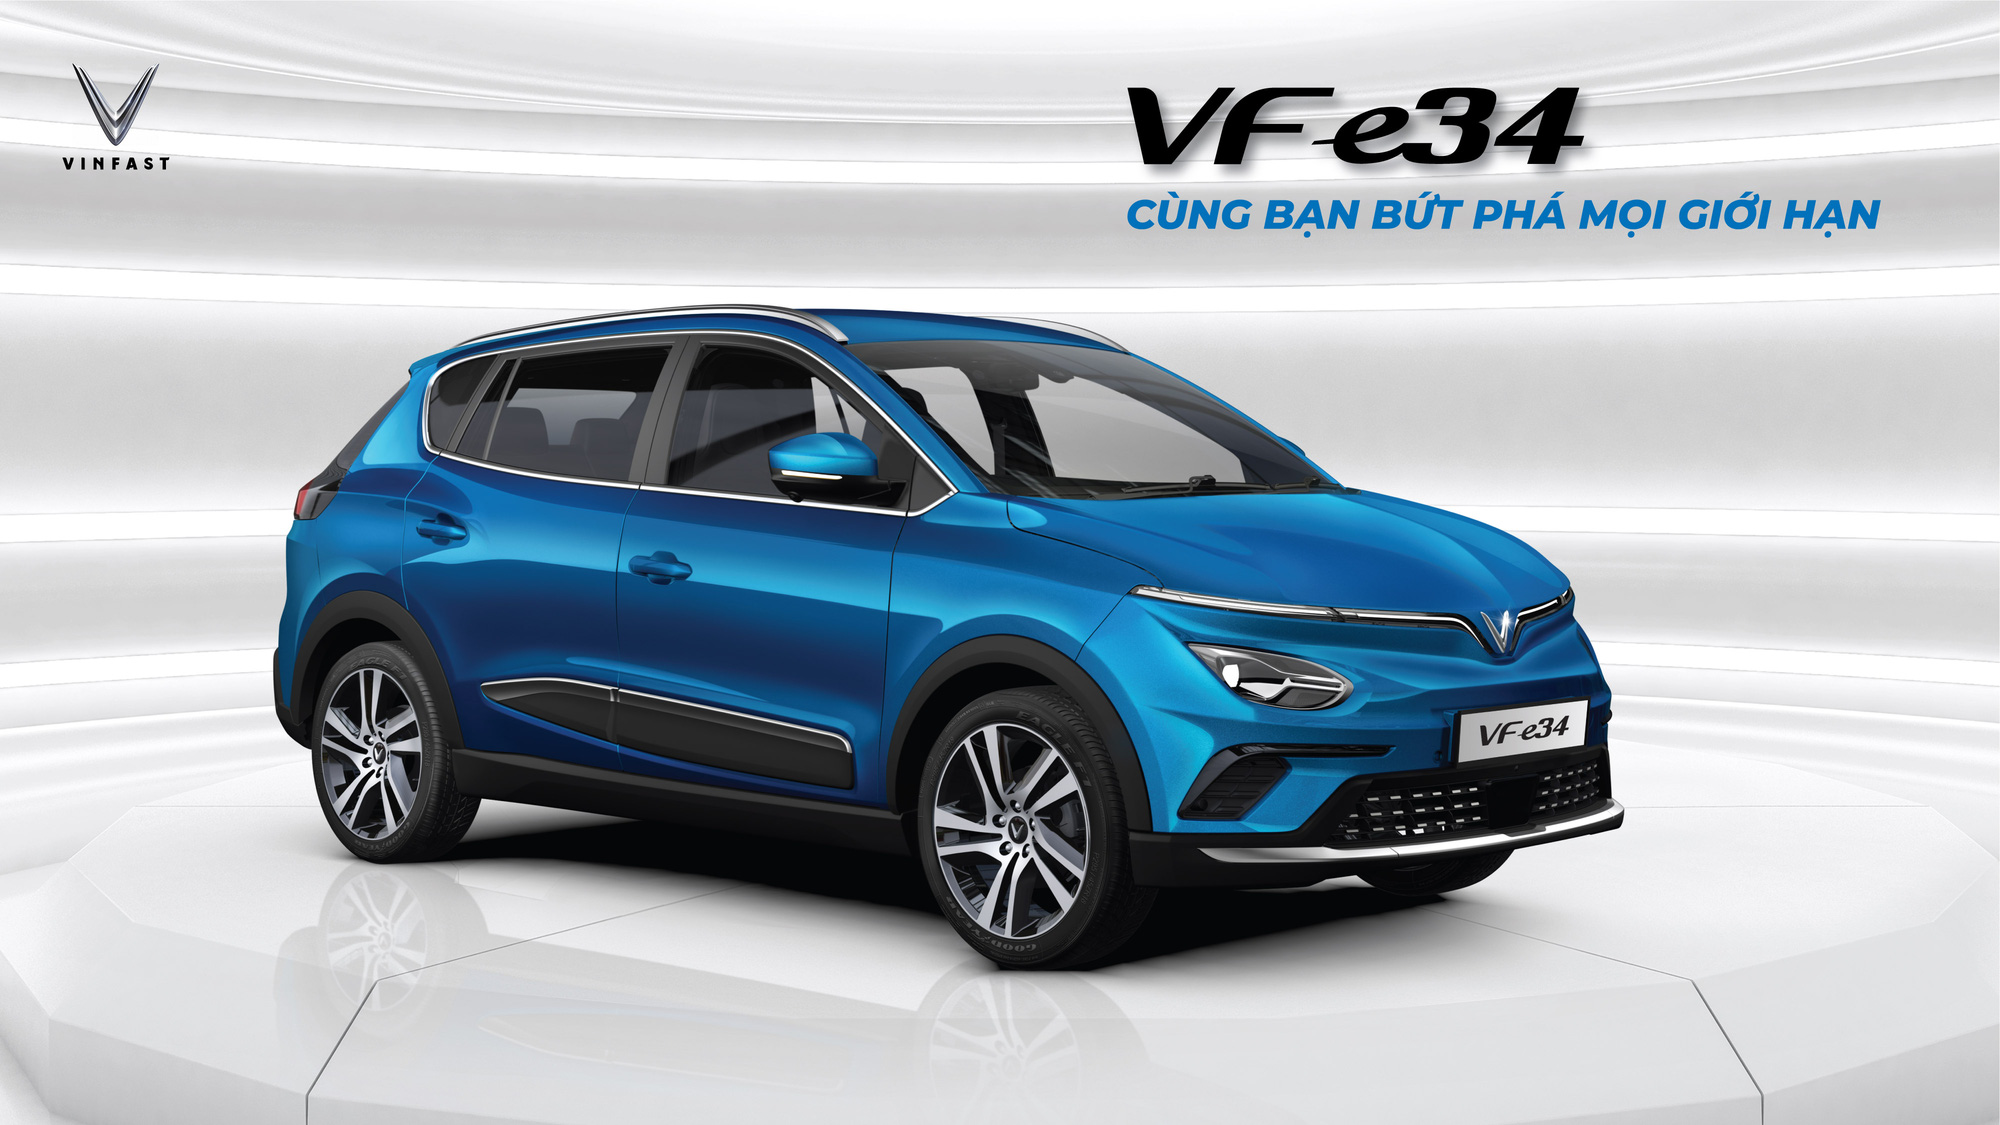 VinFast mở bán mẫu ô tô điện đầu tiên với giá 690 triệu đồng - Ảnh 3.